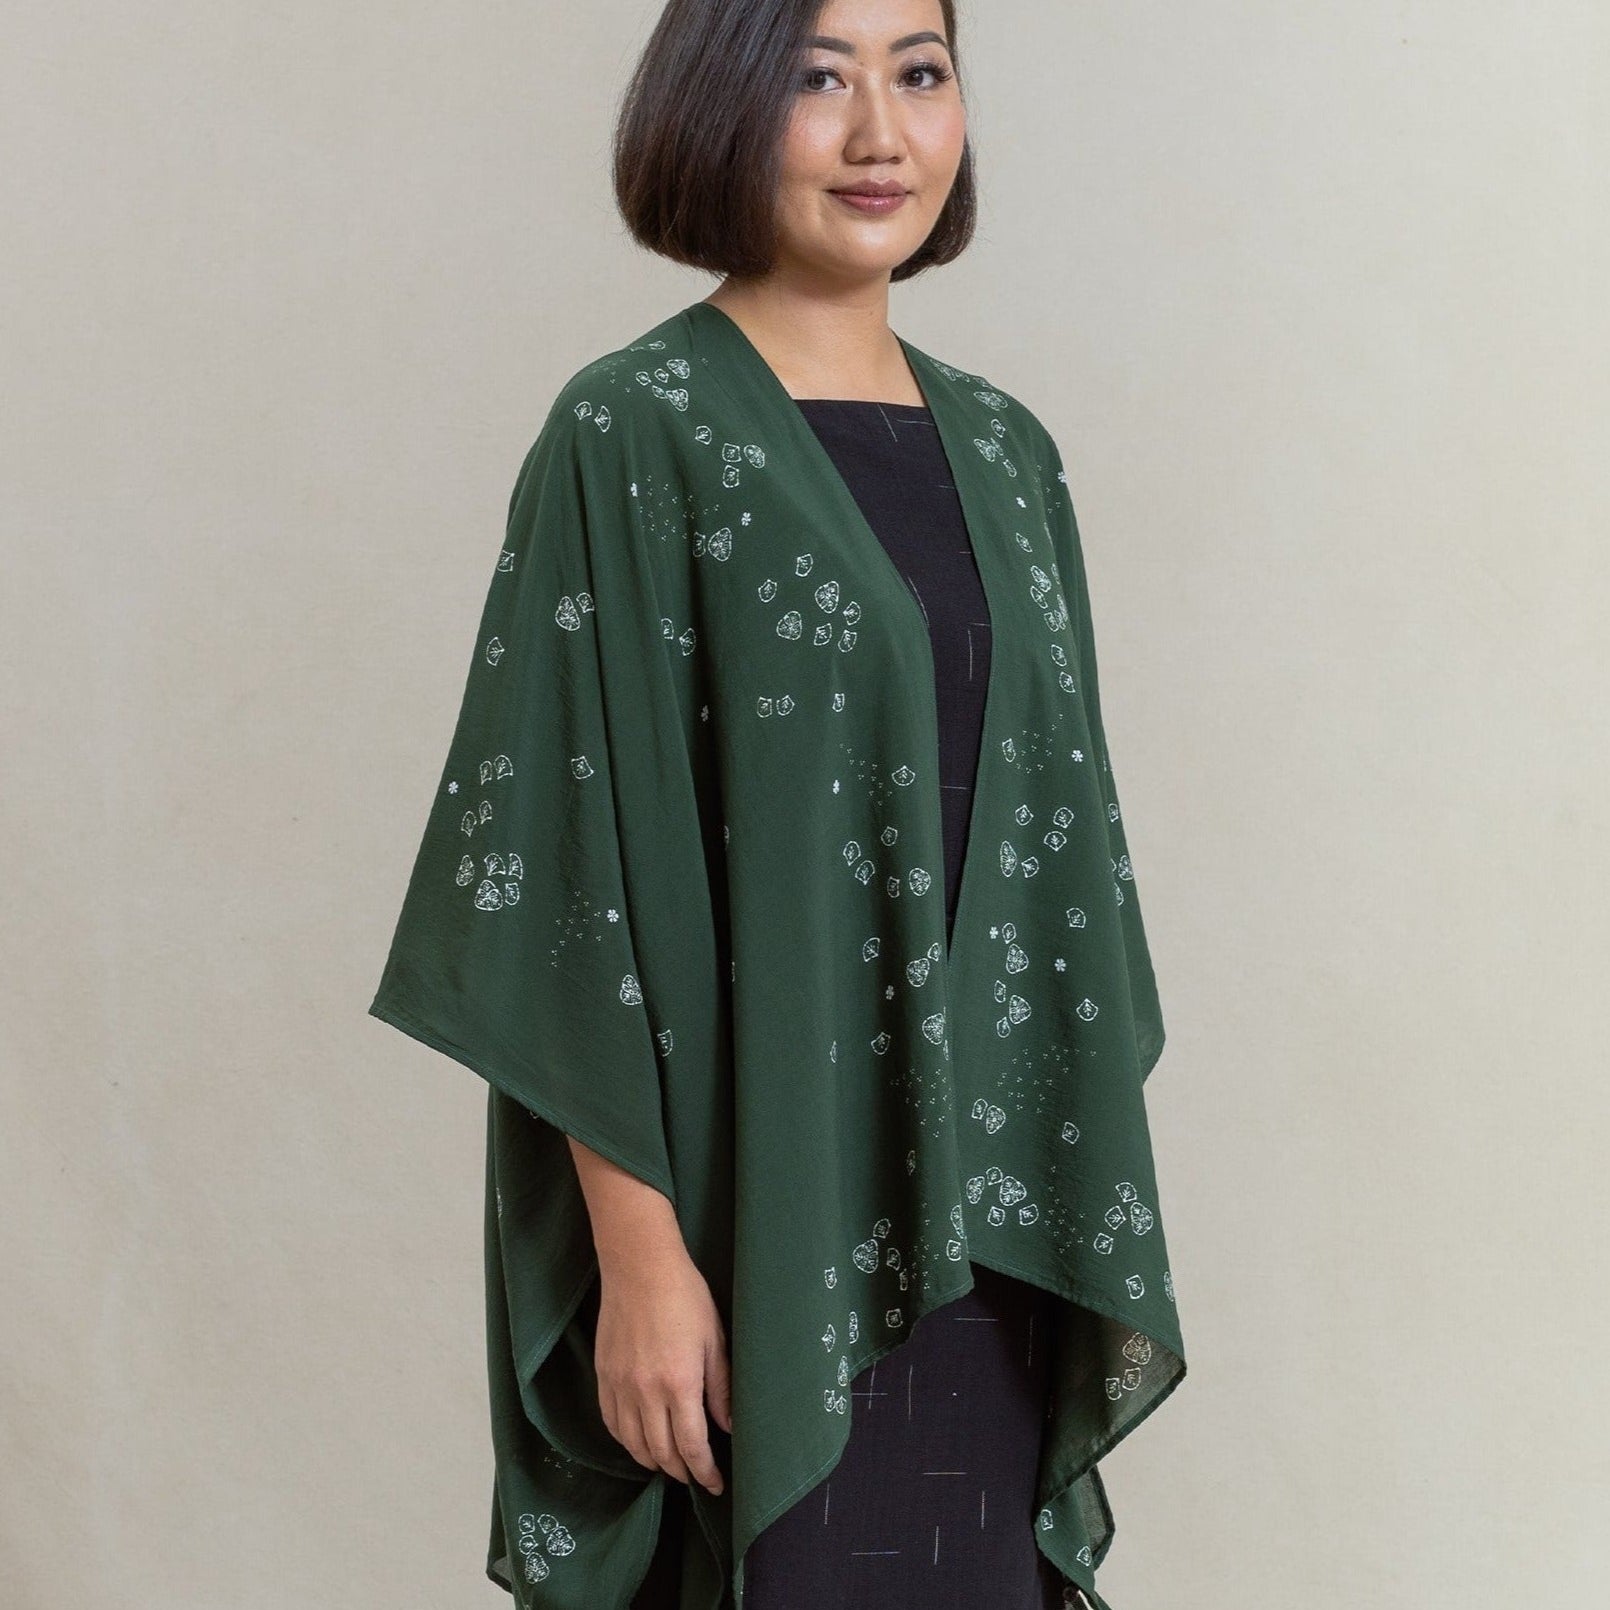 throw, slow fashion, sustainable fashion, batik tulis, natural dye, plant based, outerwear, outer, women's fashion